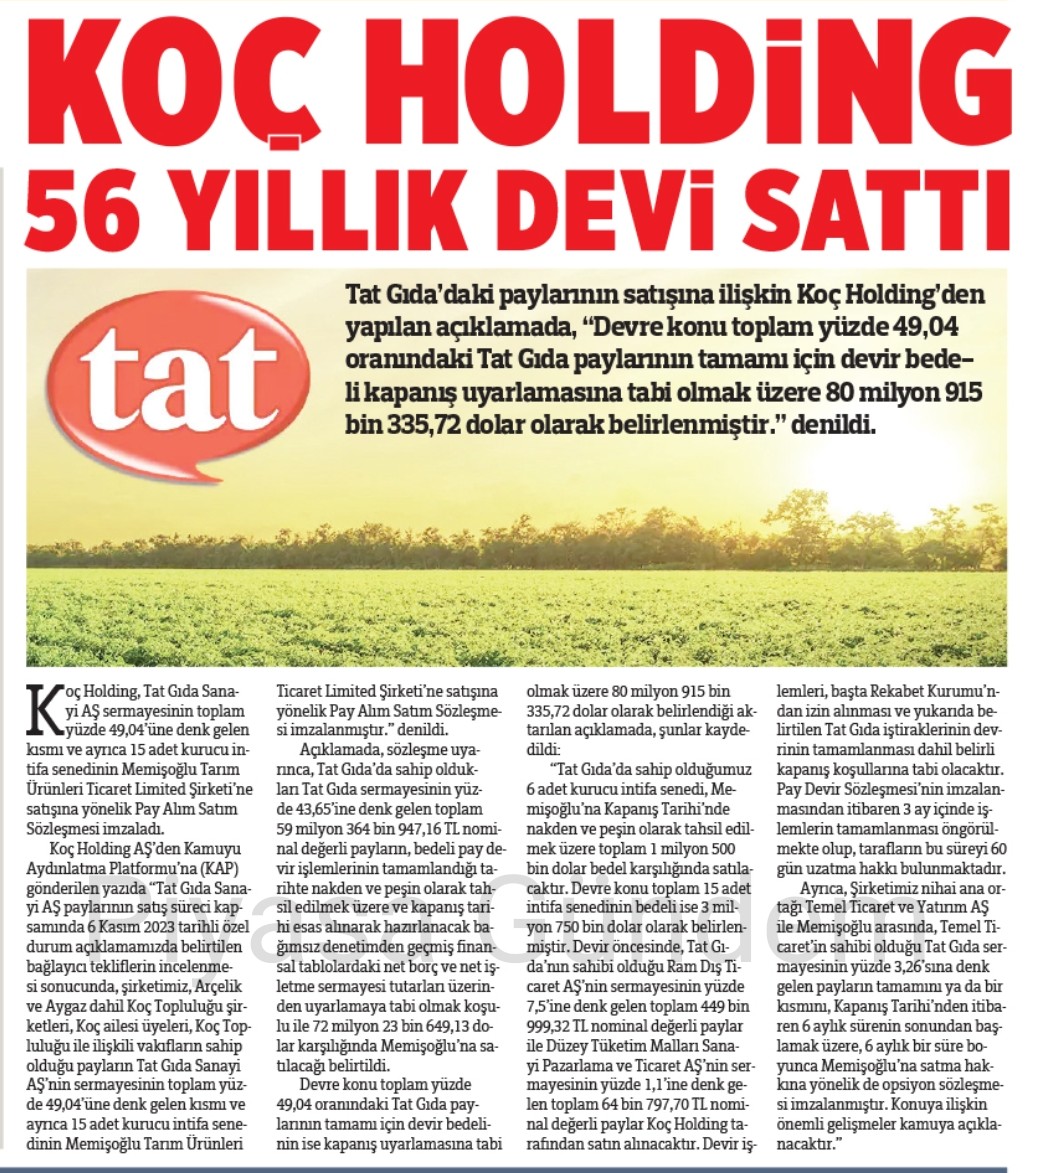 #TATGD Koç Holding, 56 Yıllık Devi Sattı.

-Yenibirlik